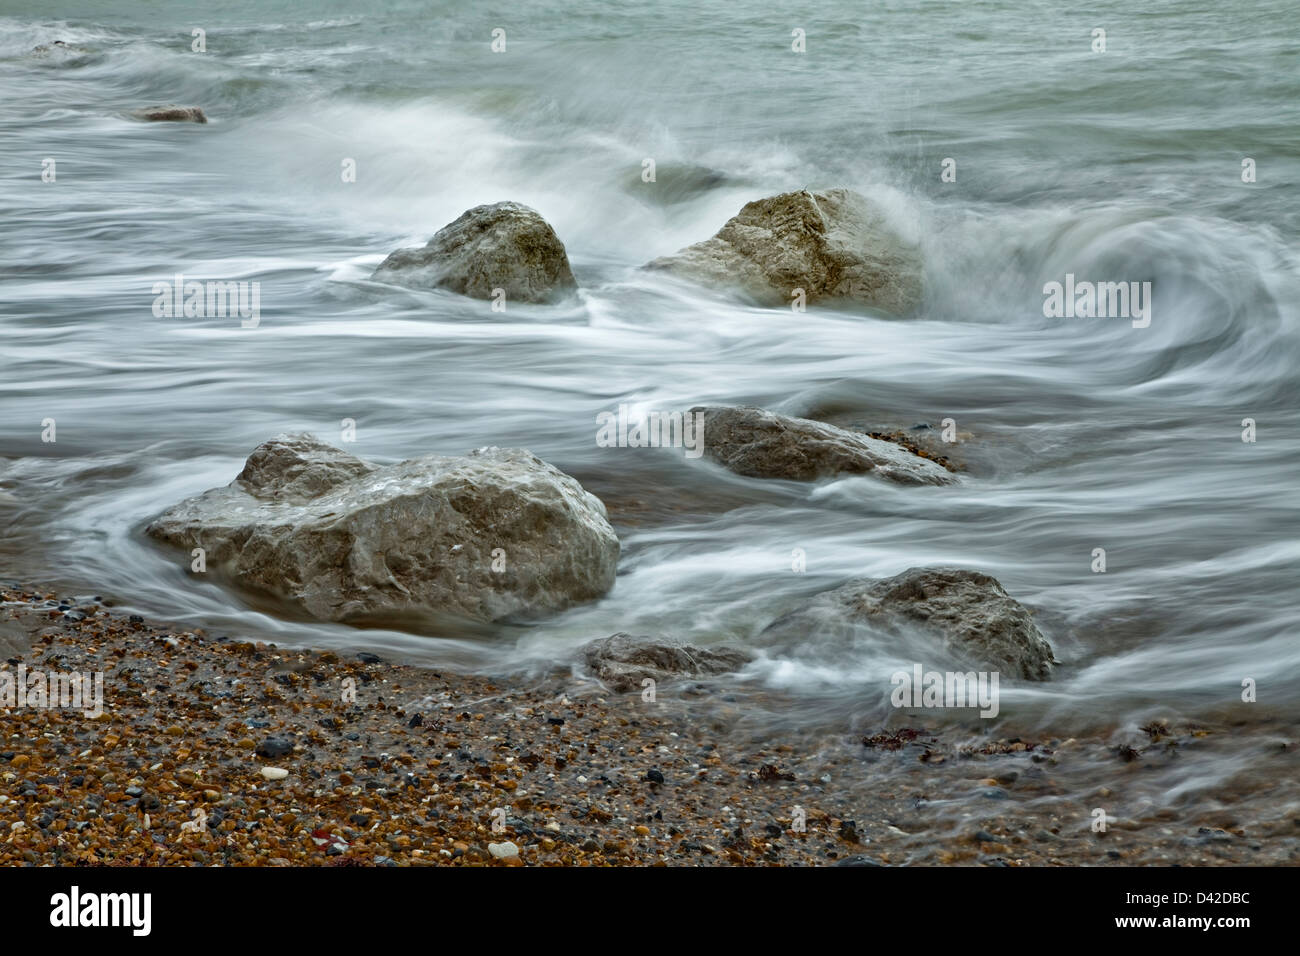 Receding wave over rocks, Worthing coast, Worthing, West Sussex, UK Stock Photo